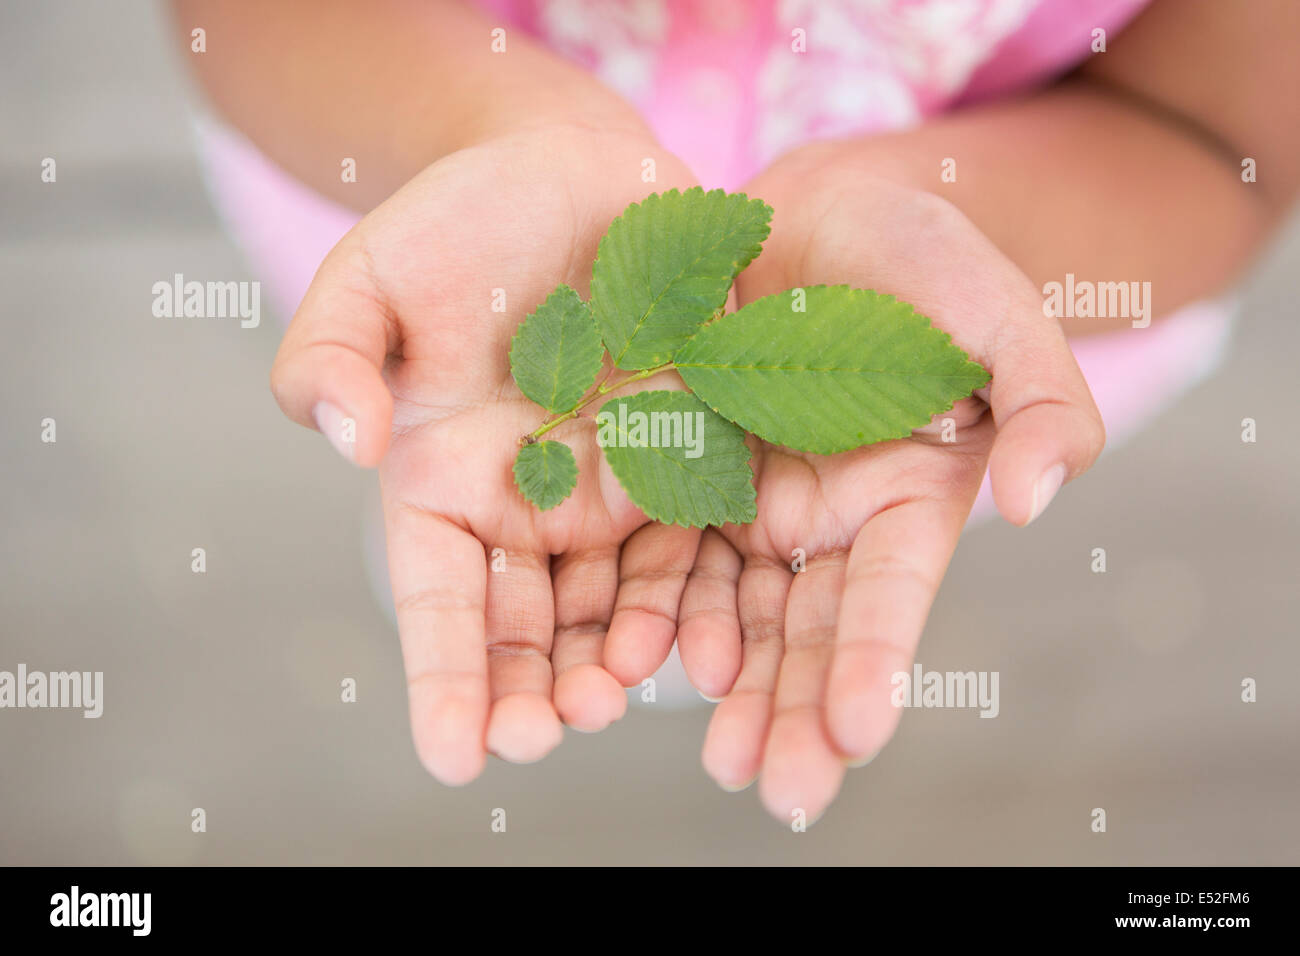 Ein Kind hält grüne Blätter in ihre Handflächen. Stockfoto